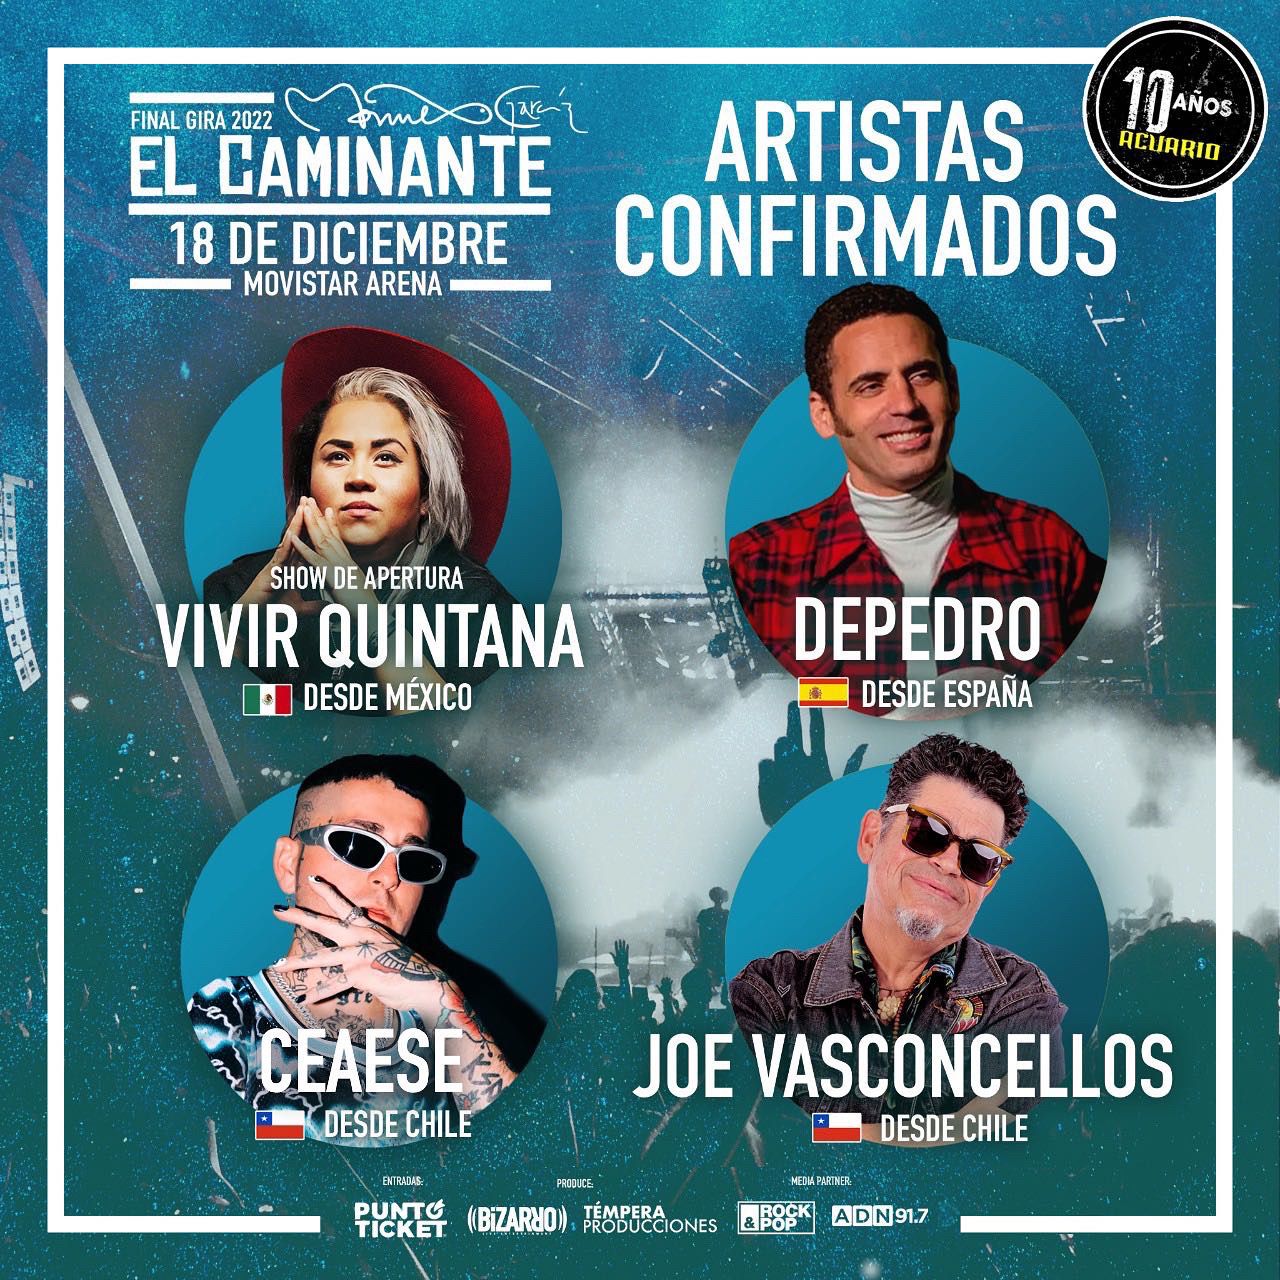 Invitados de lujo en el concierto de Manuel García este 18 de diciembre en Movistar Arena